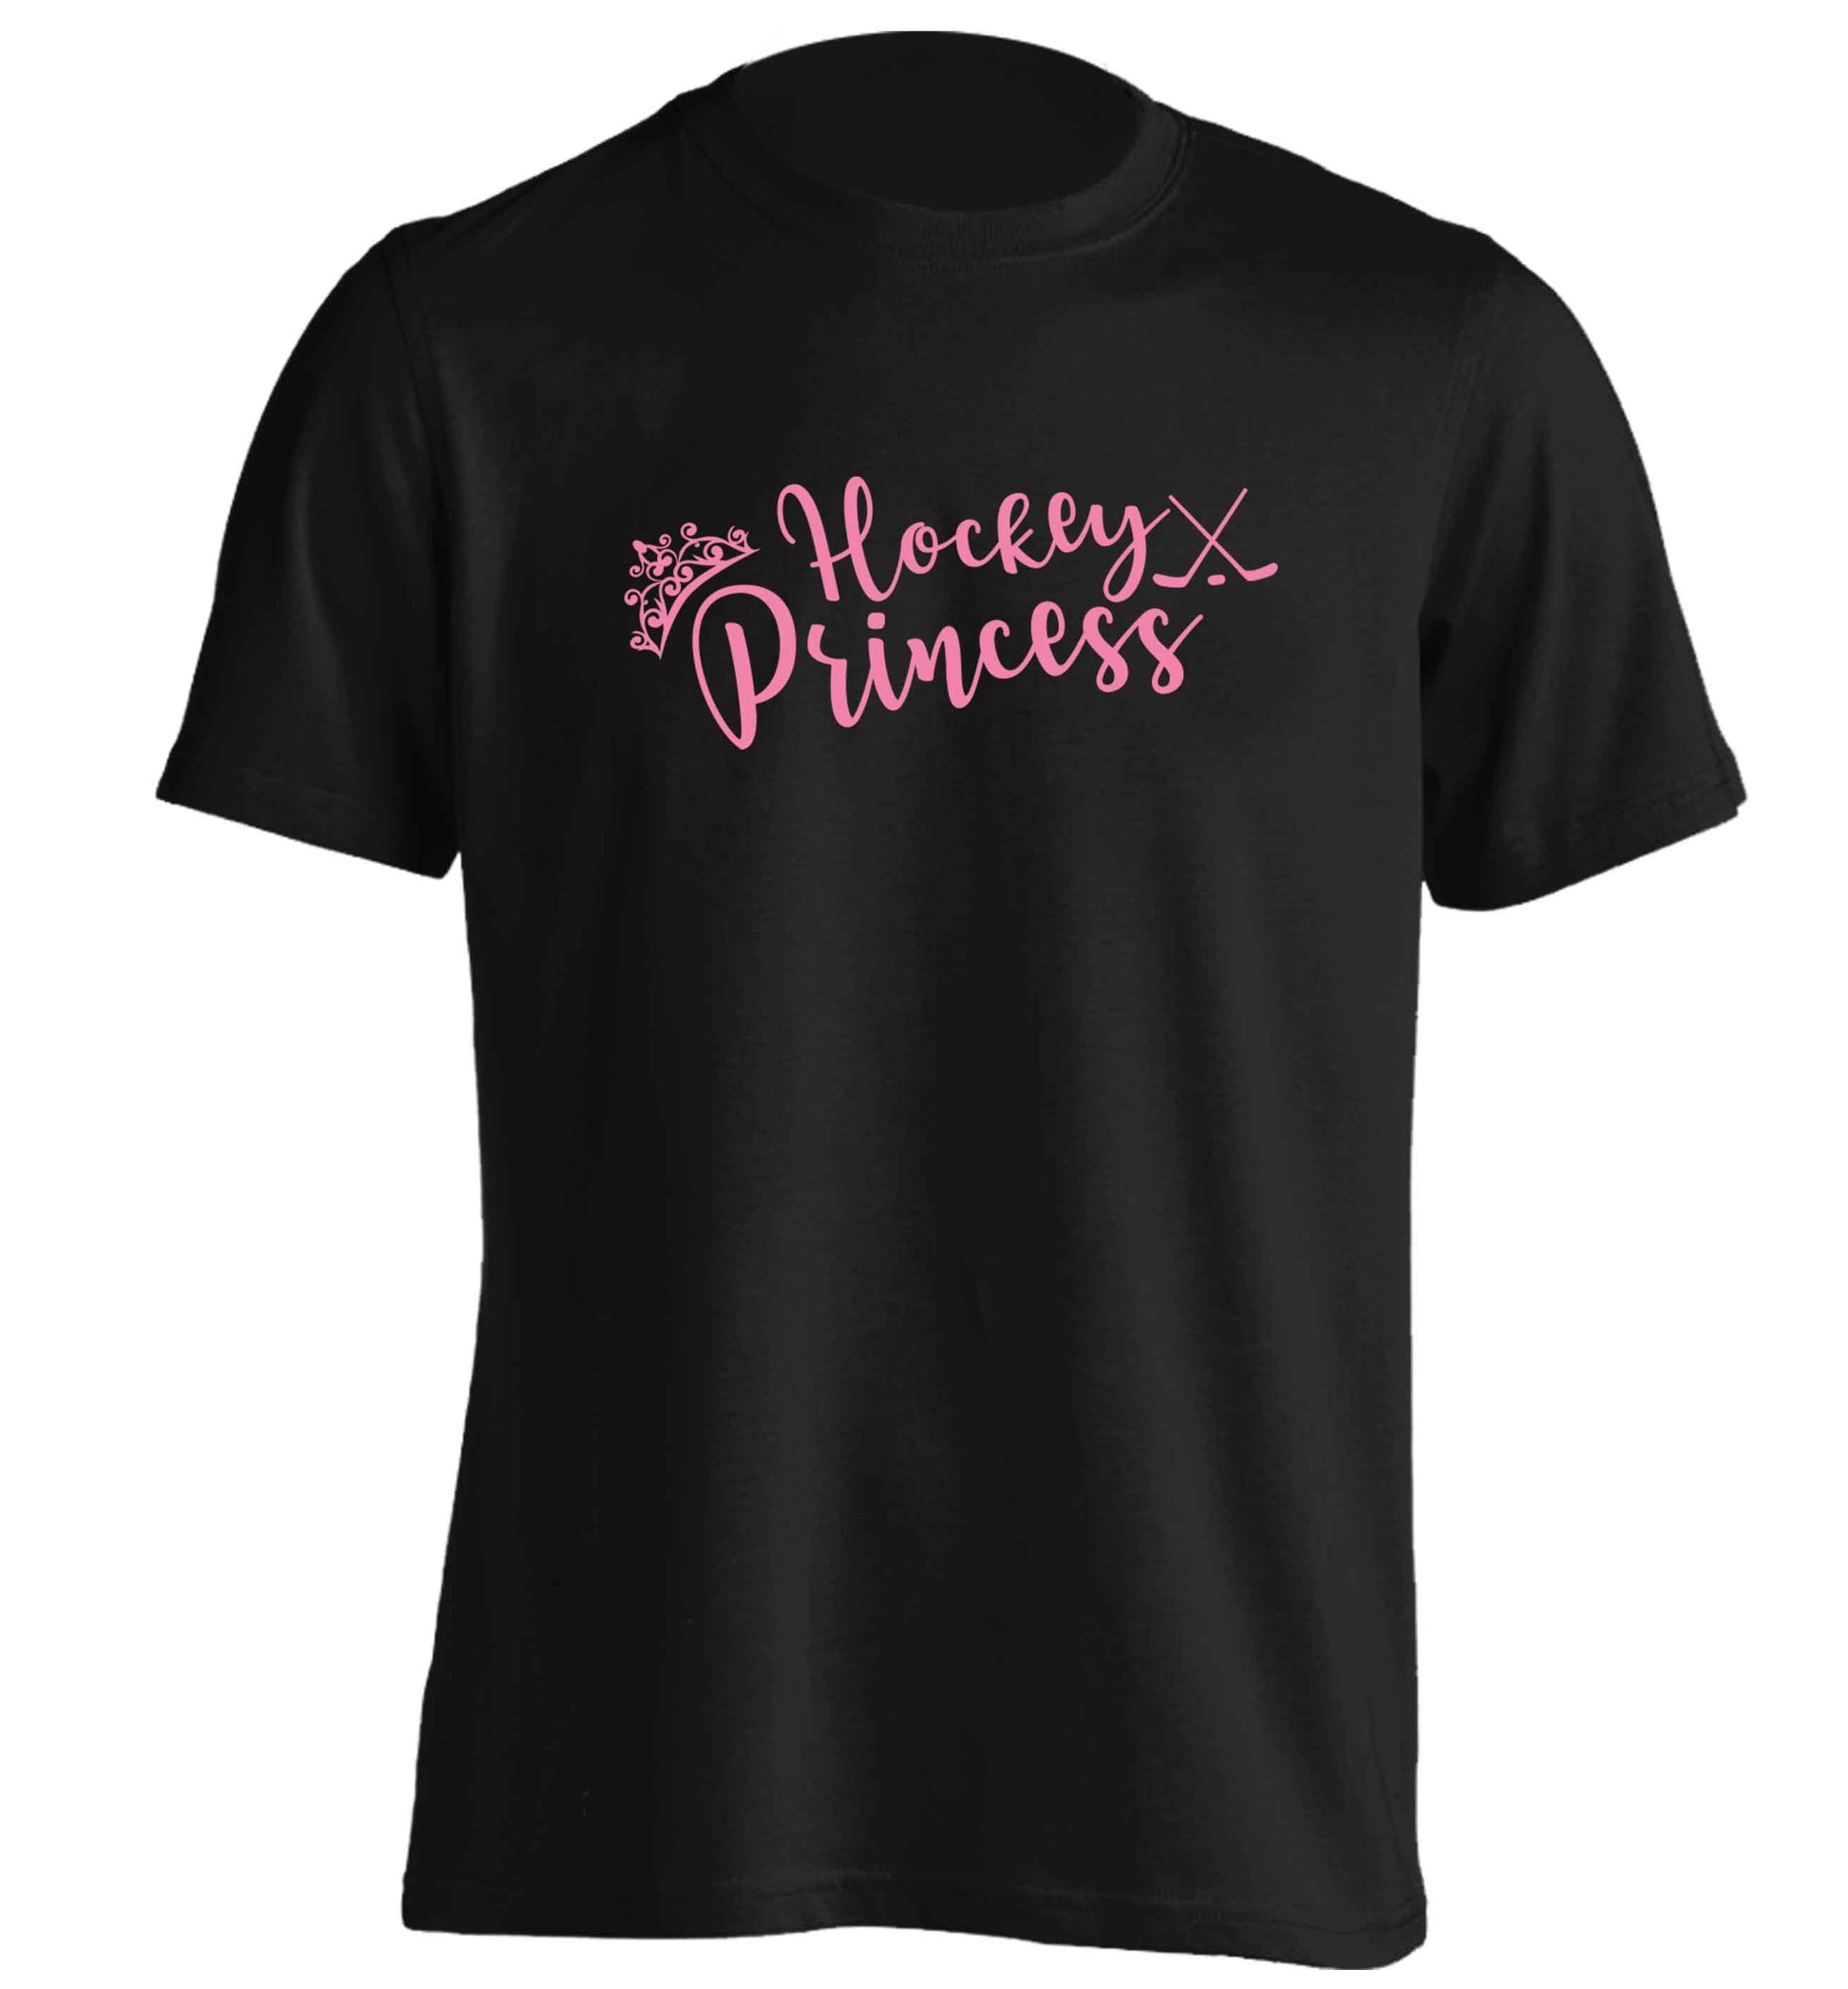 Hockey princess adults unisex black Tshirt 2XL